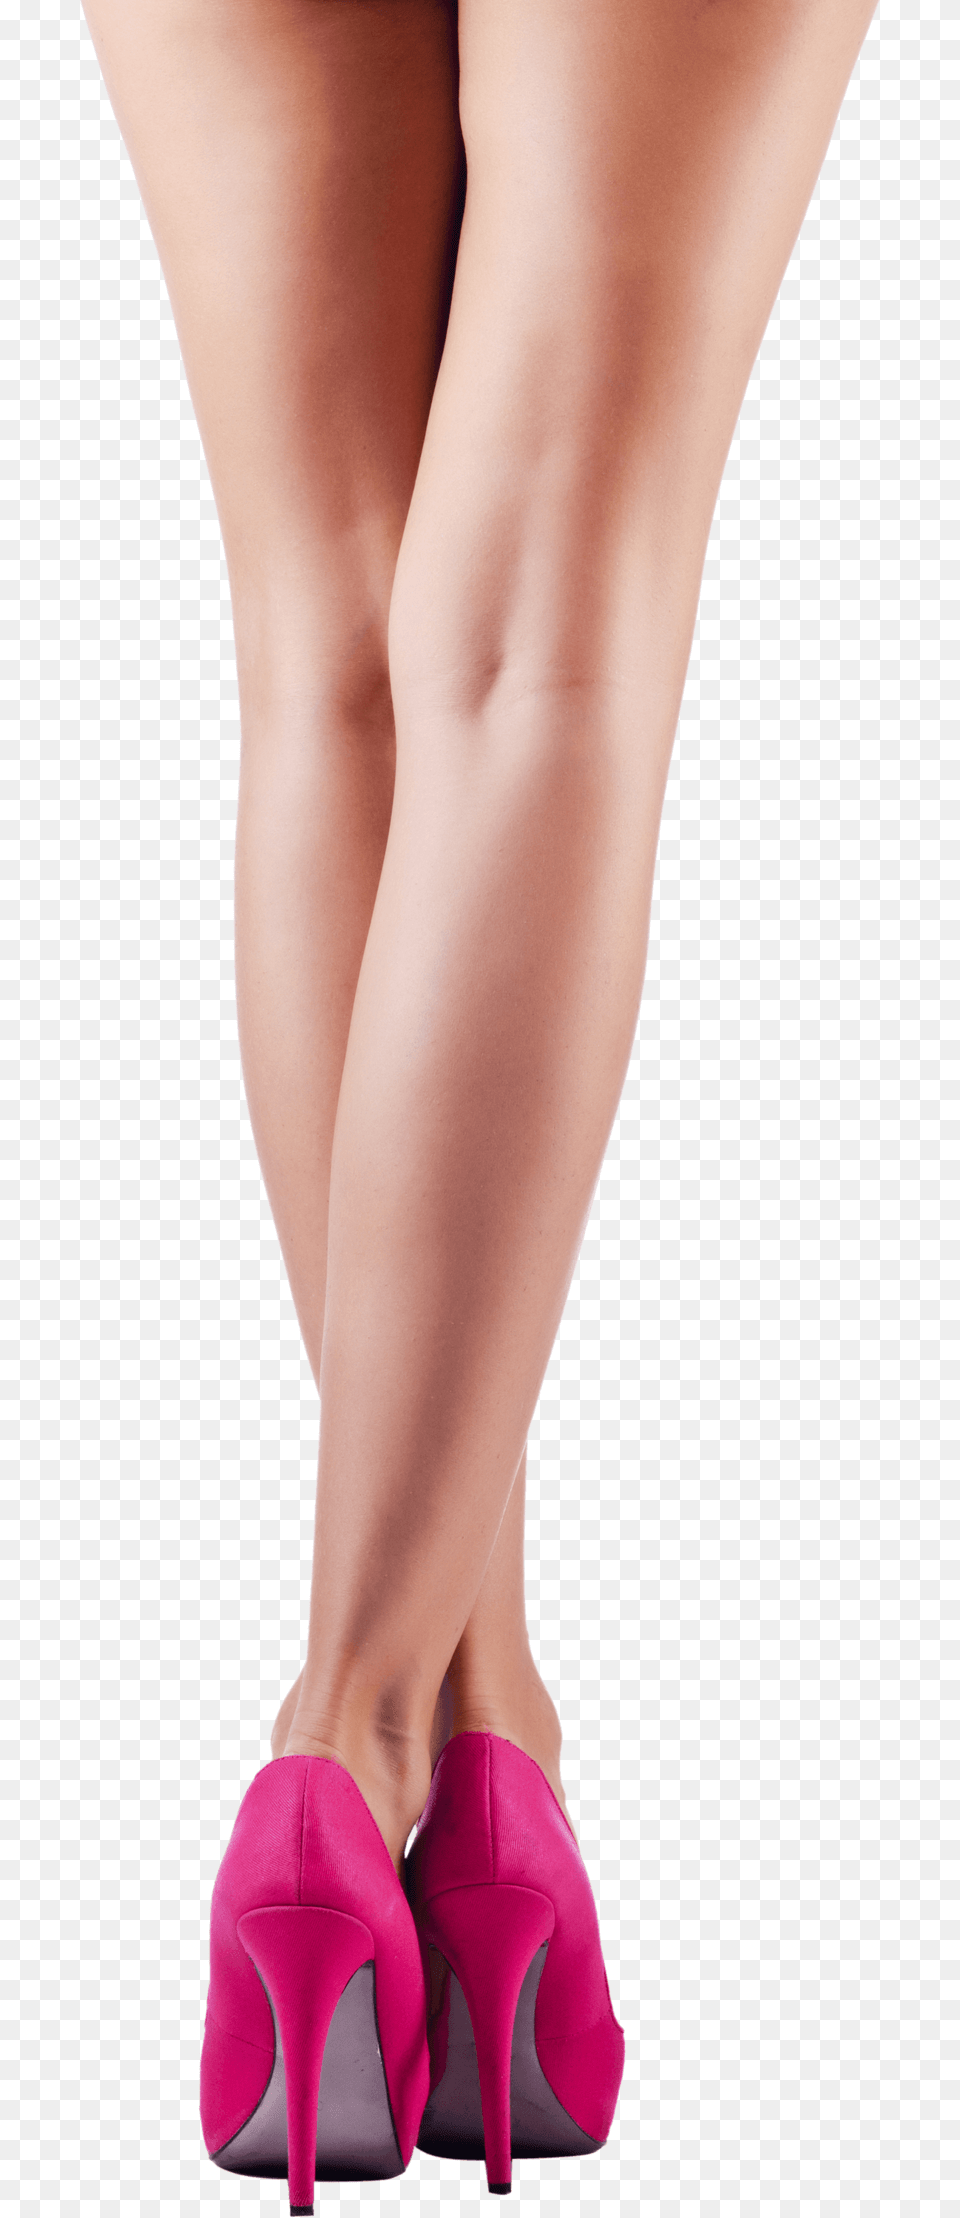 Pink High Heels Legs Woman Legs, Clothing, Footwear, High Heel, Shoe Free Png Download